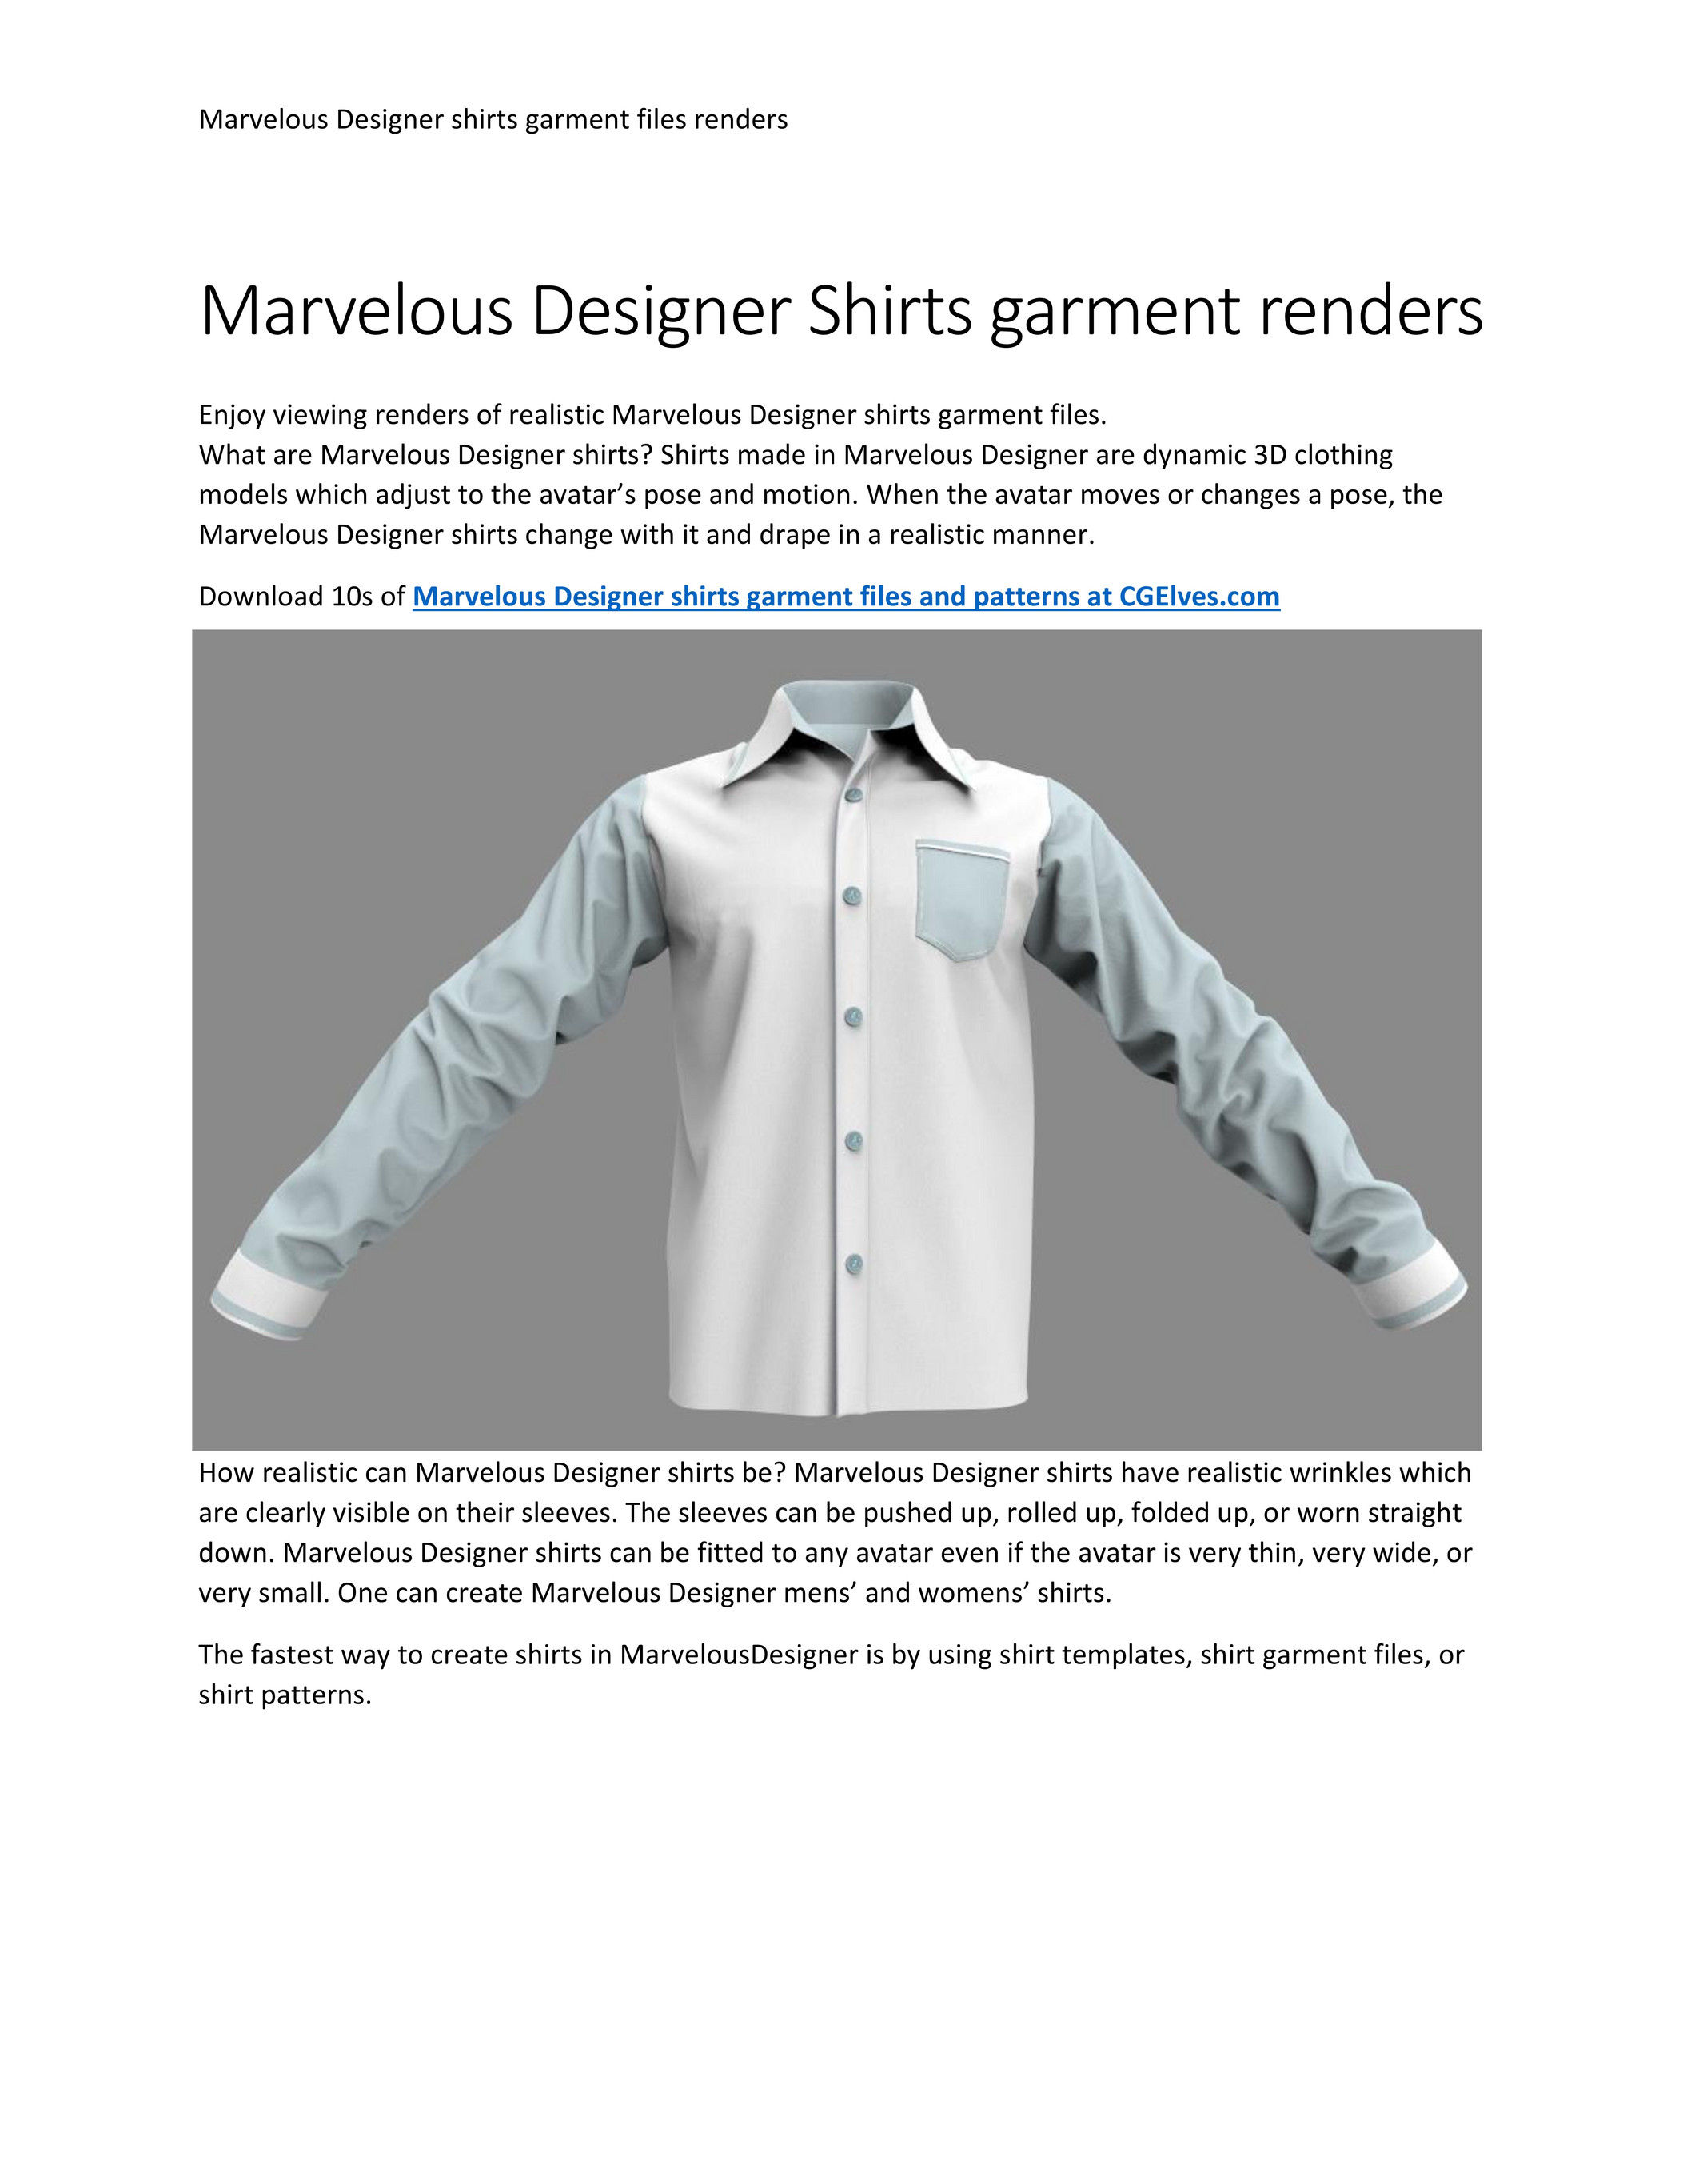 Marvelous Designer Free Garment - Sweater - 3D Model - ShareCG